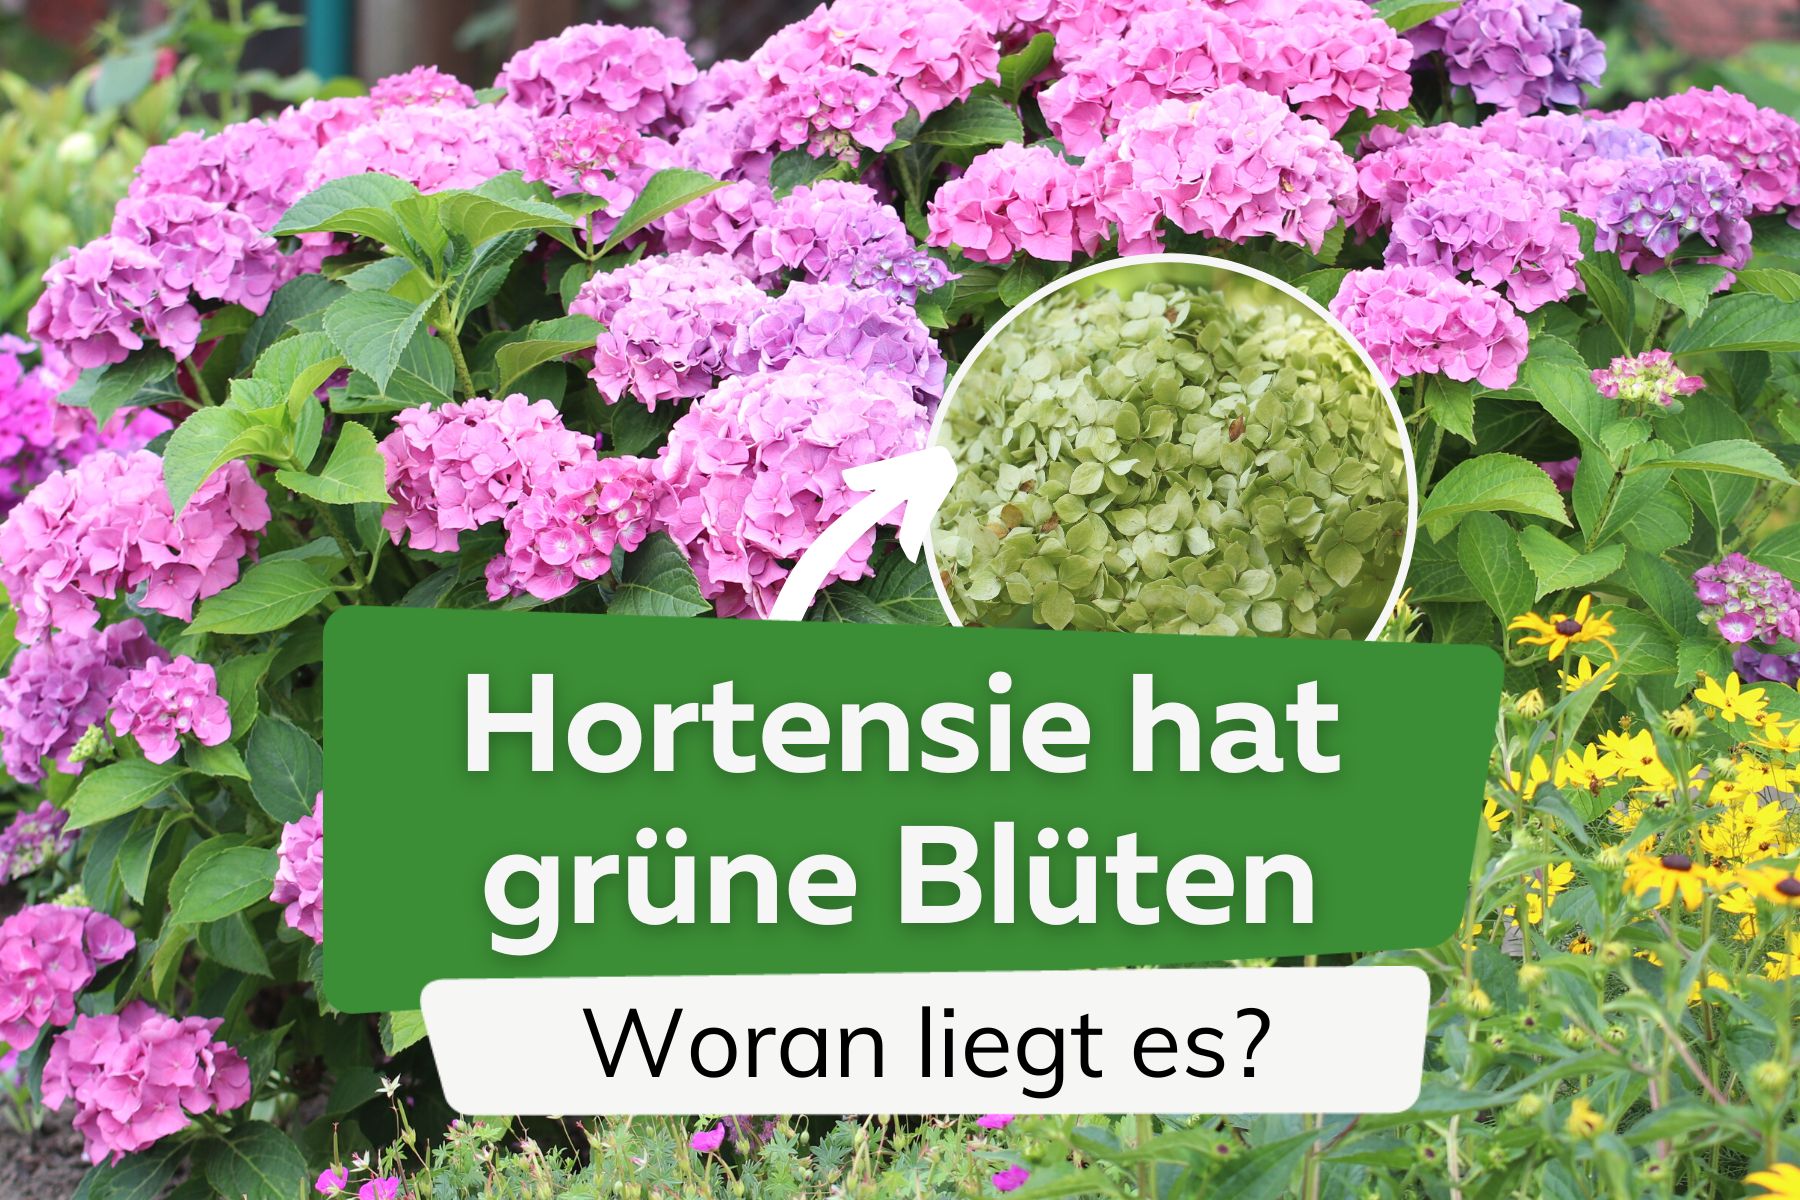 La hortensia tiene flores verdes: por eso se vuelven verdes